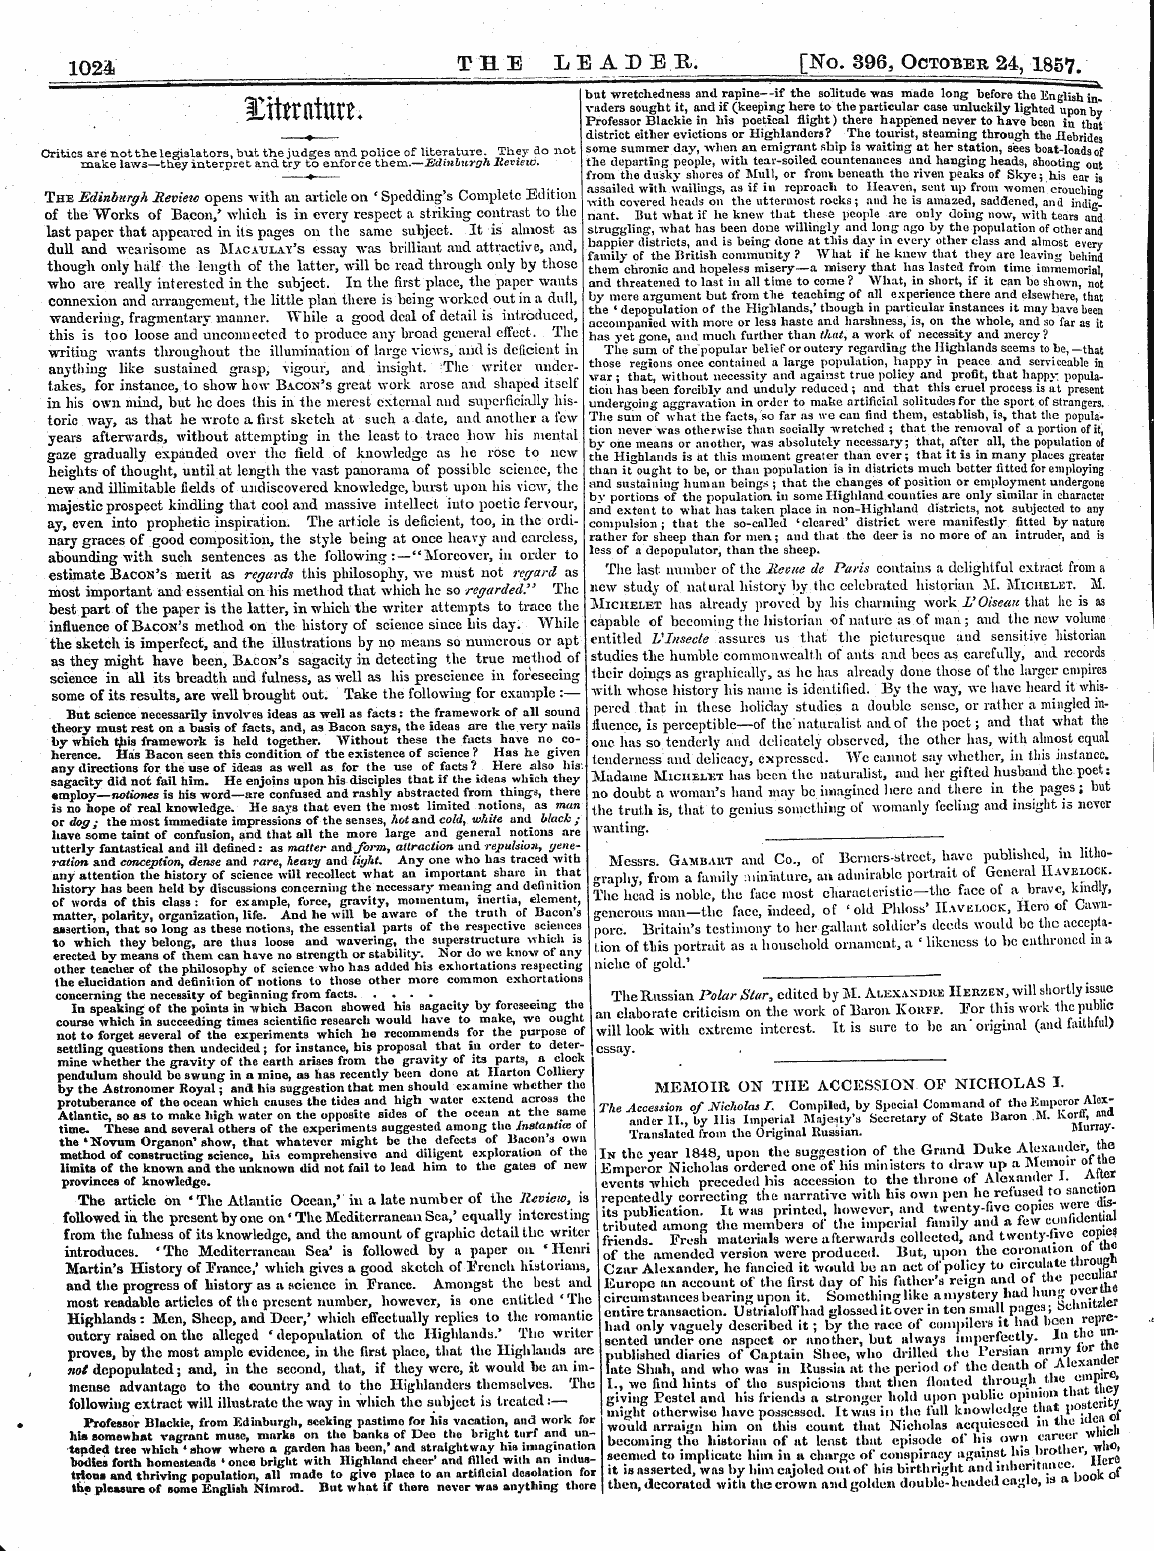 Leader (1850-1860): jS F Y, 2nd edition - . ' .- .Xittrnttttti